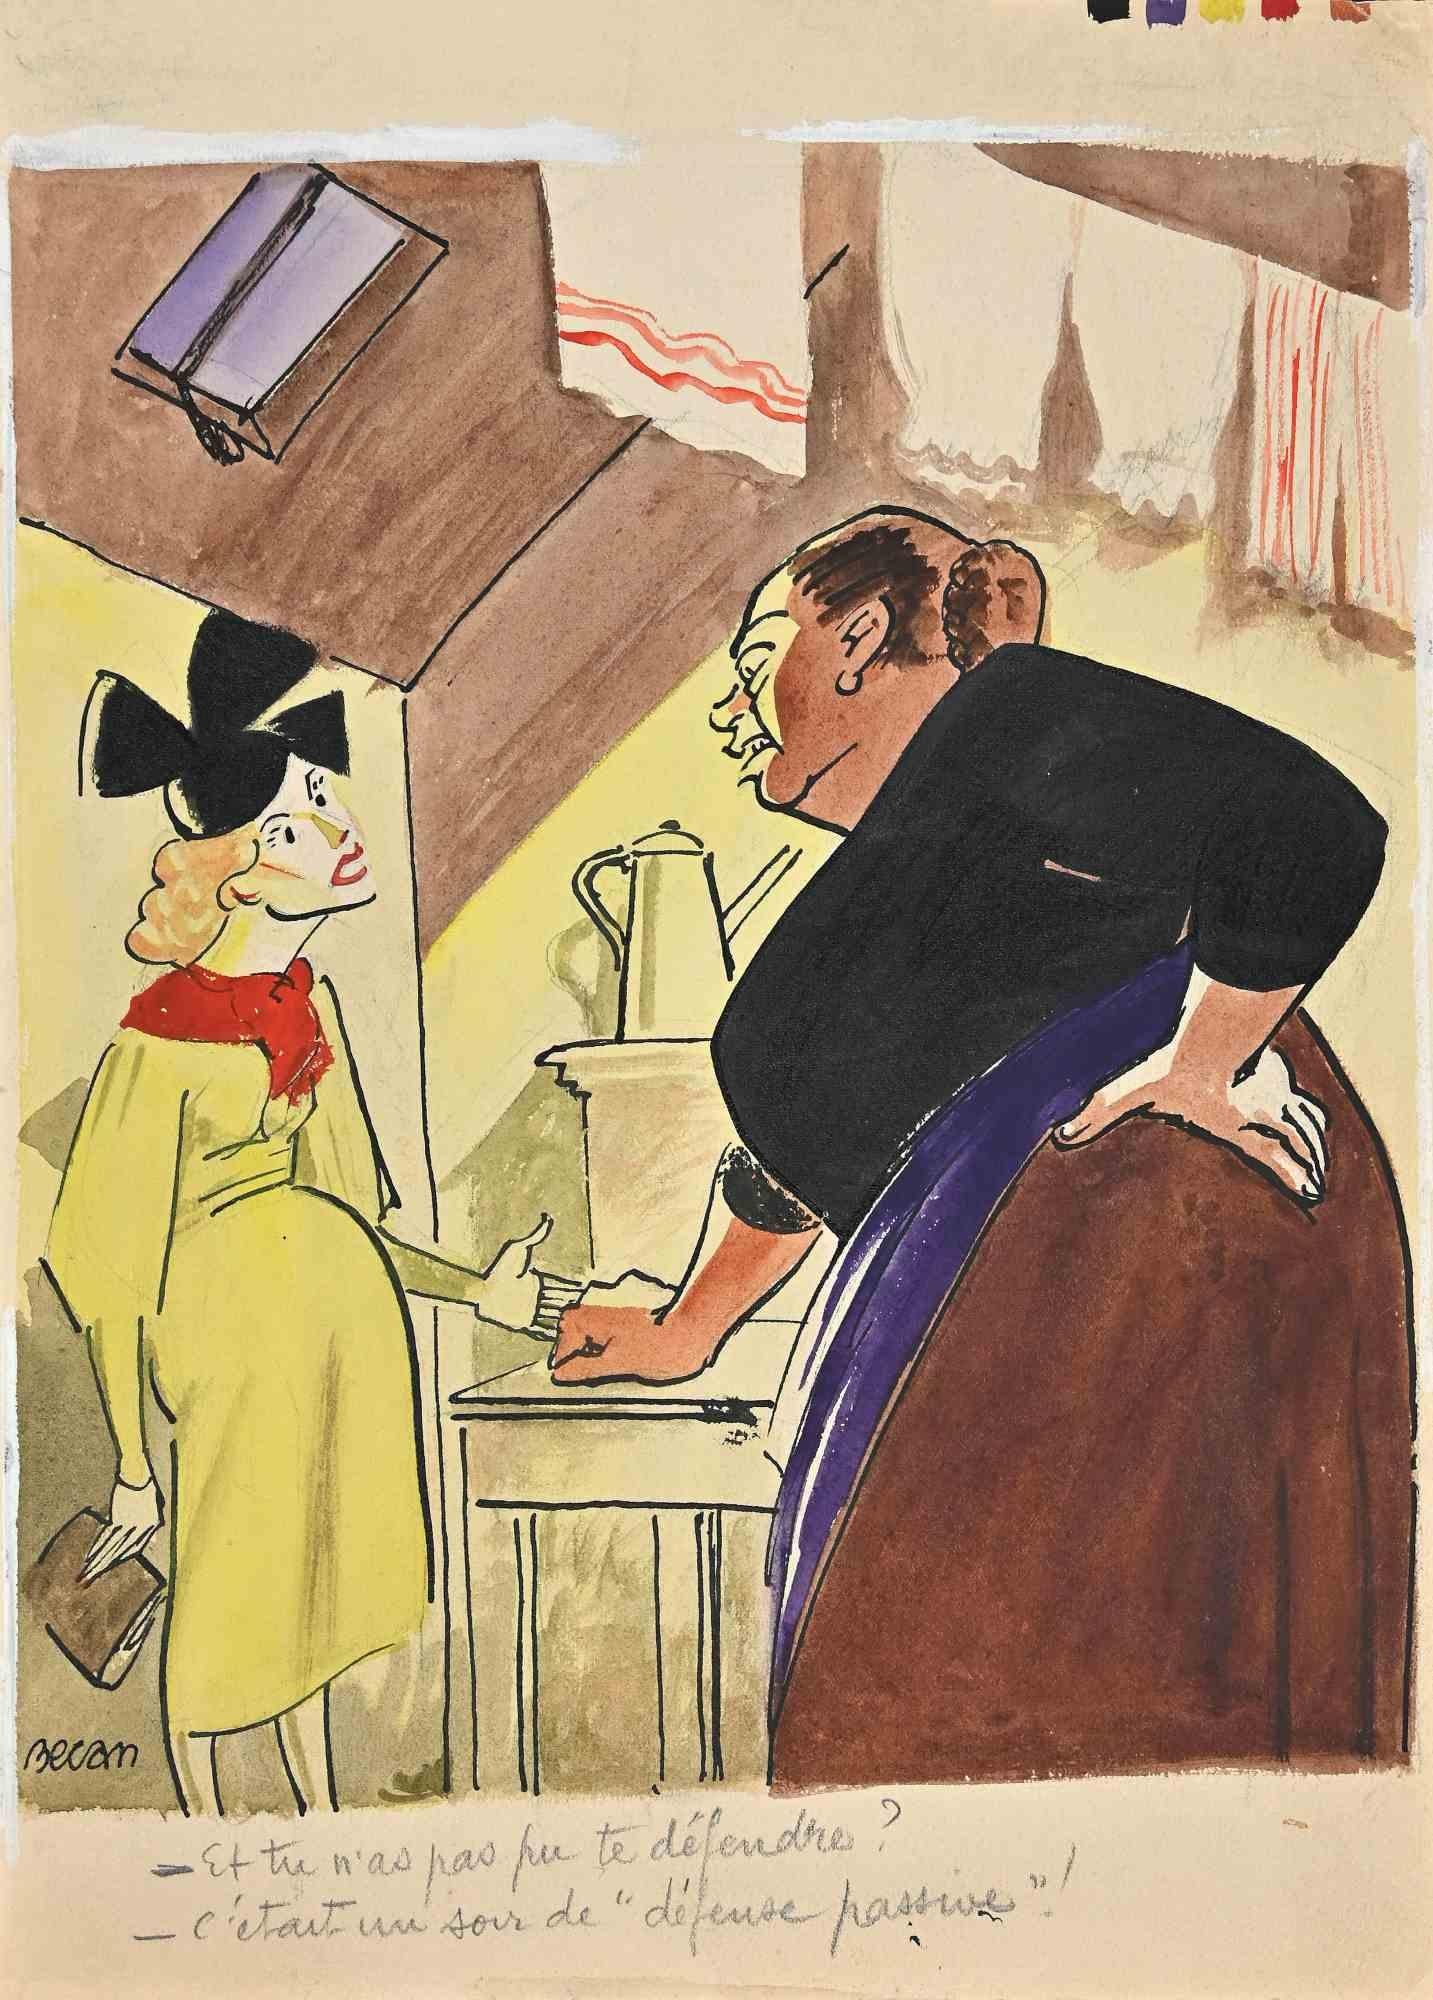 Das Gespräch zweier Frauen - Zeichnung von Bernard Bécan - 1920er Jahre